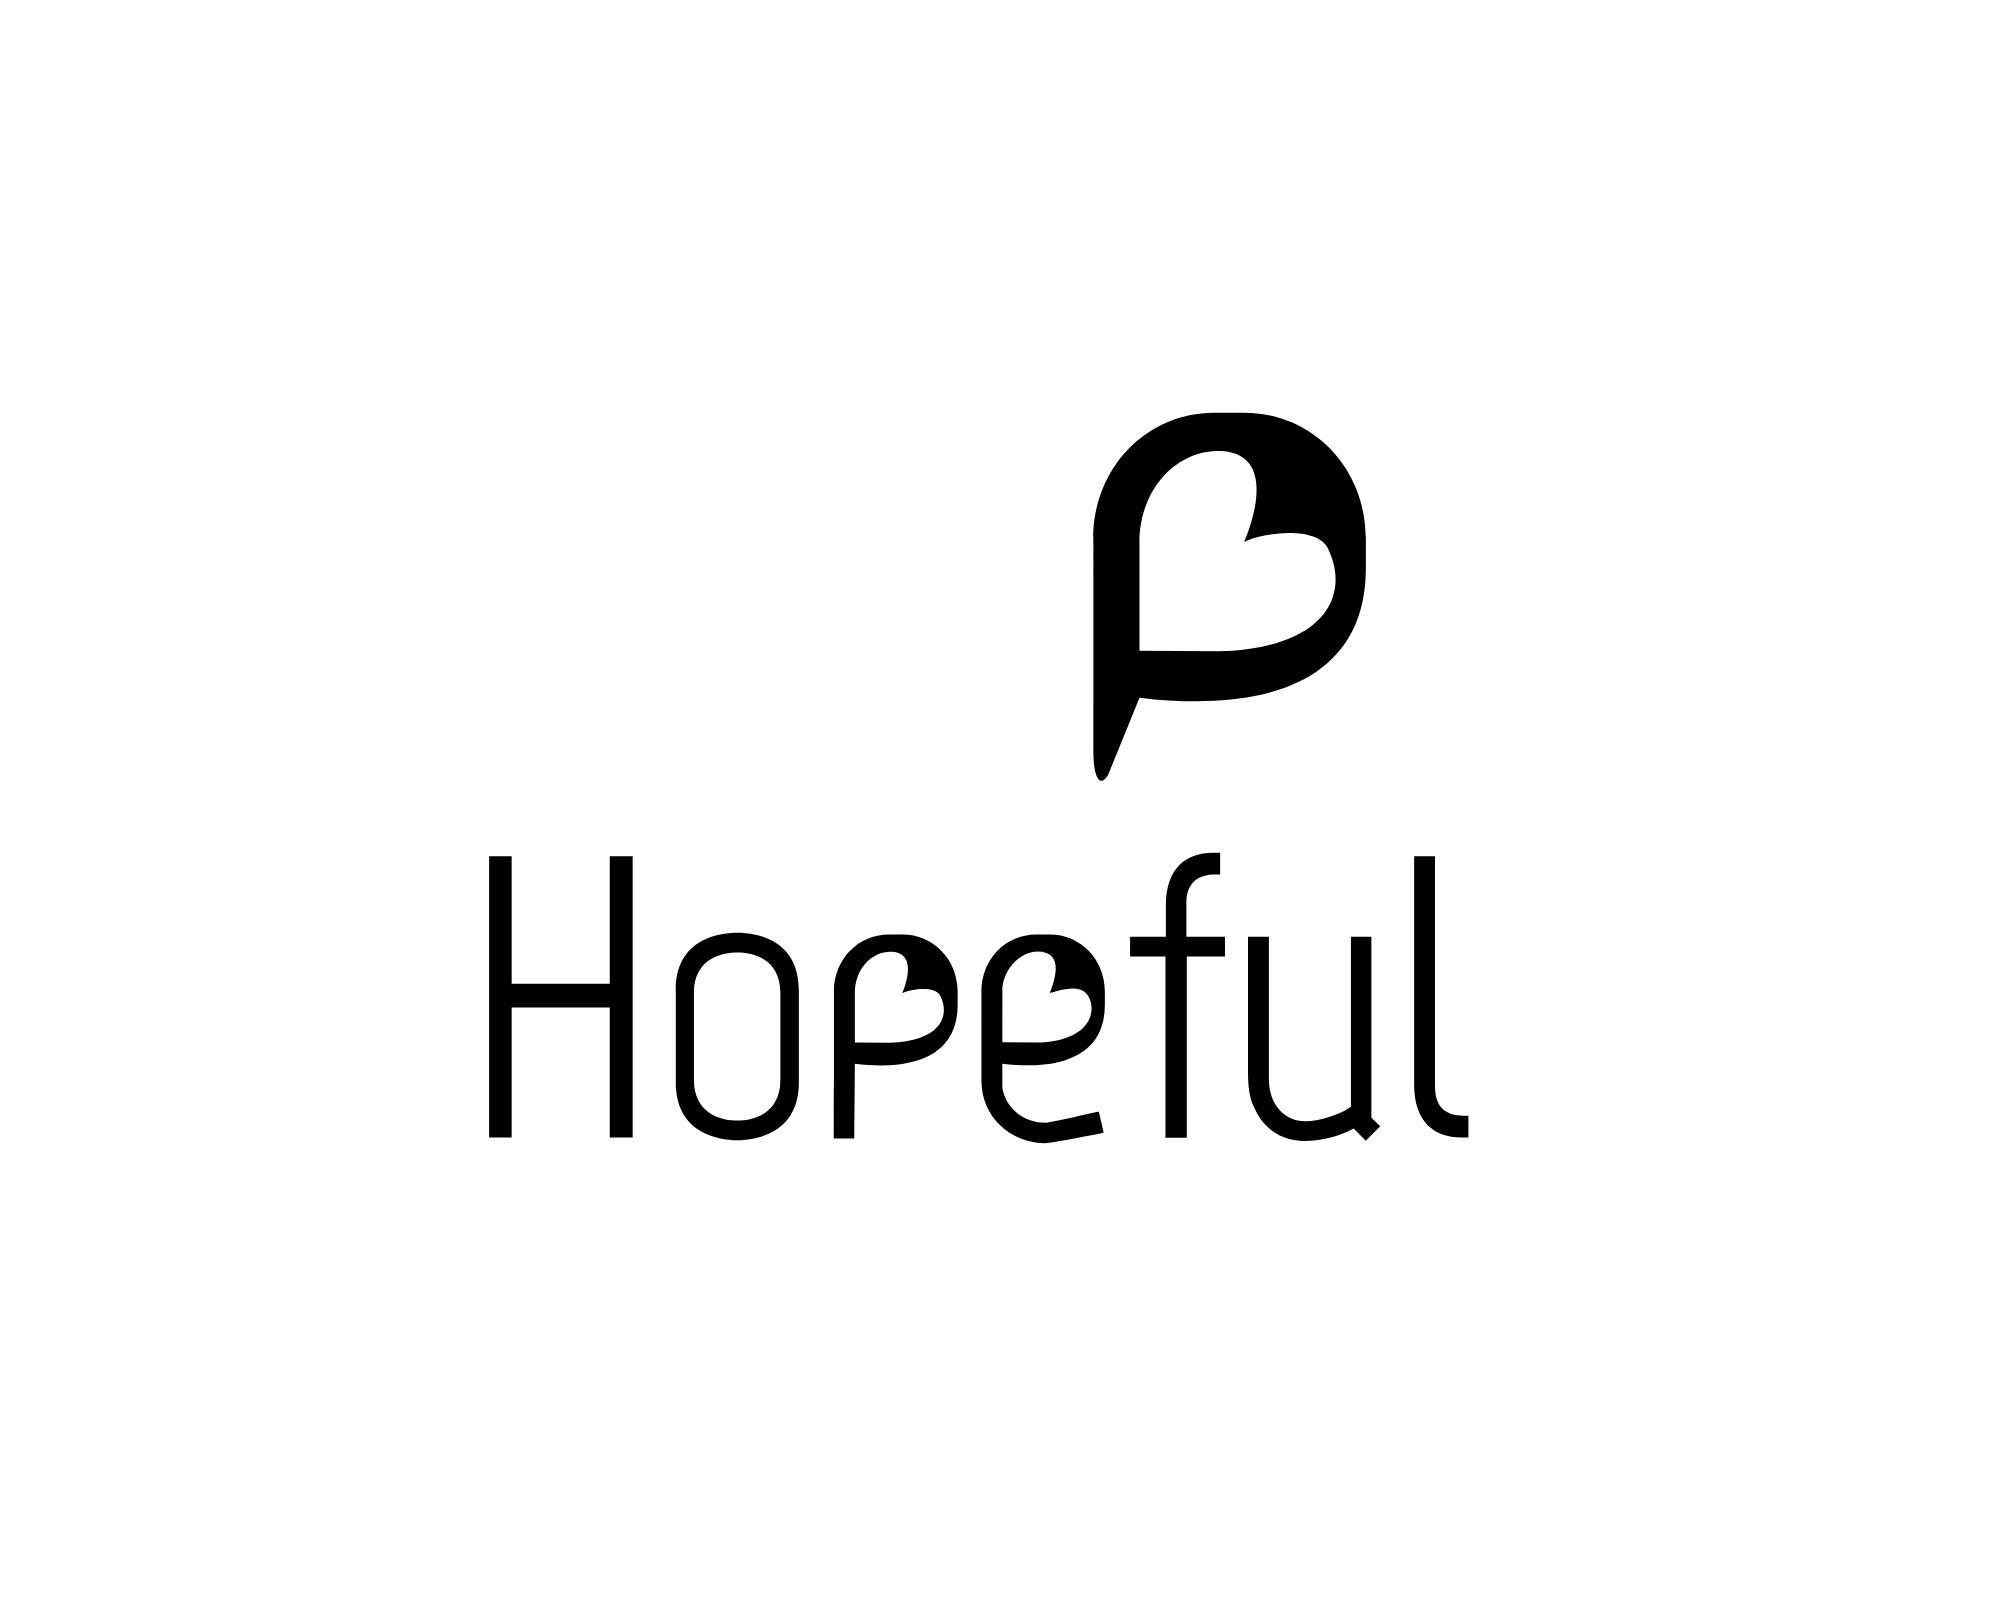 Hopeful